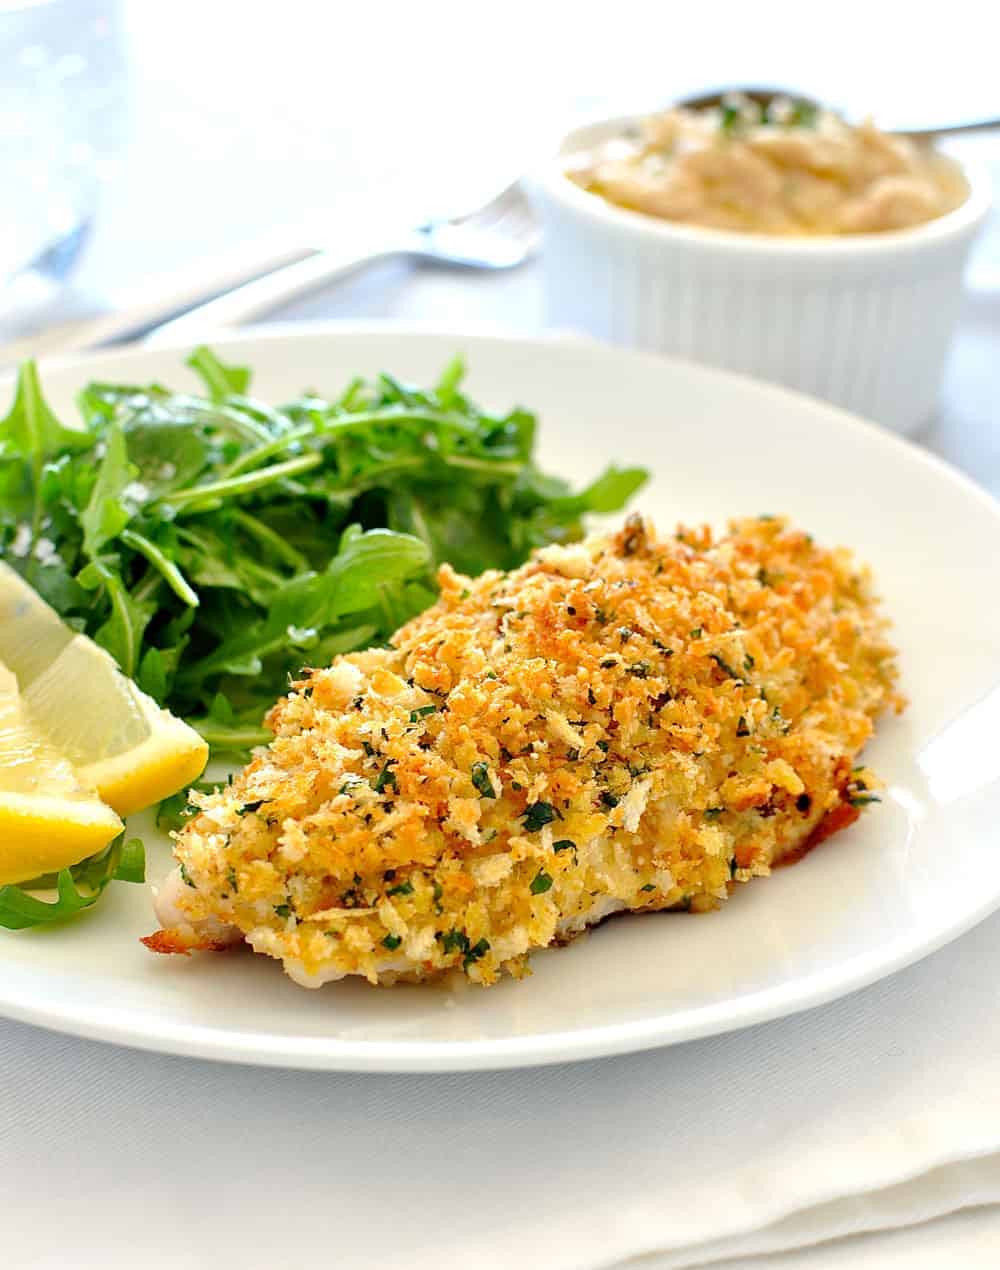 Healthy Parmesan Garlic Crumbed Fish | RecipeTin Eats